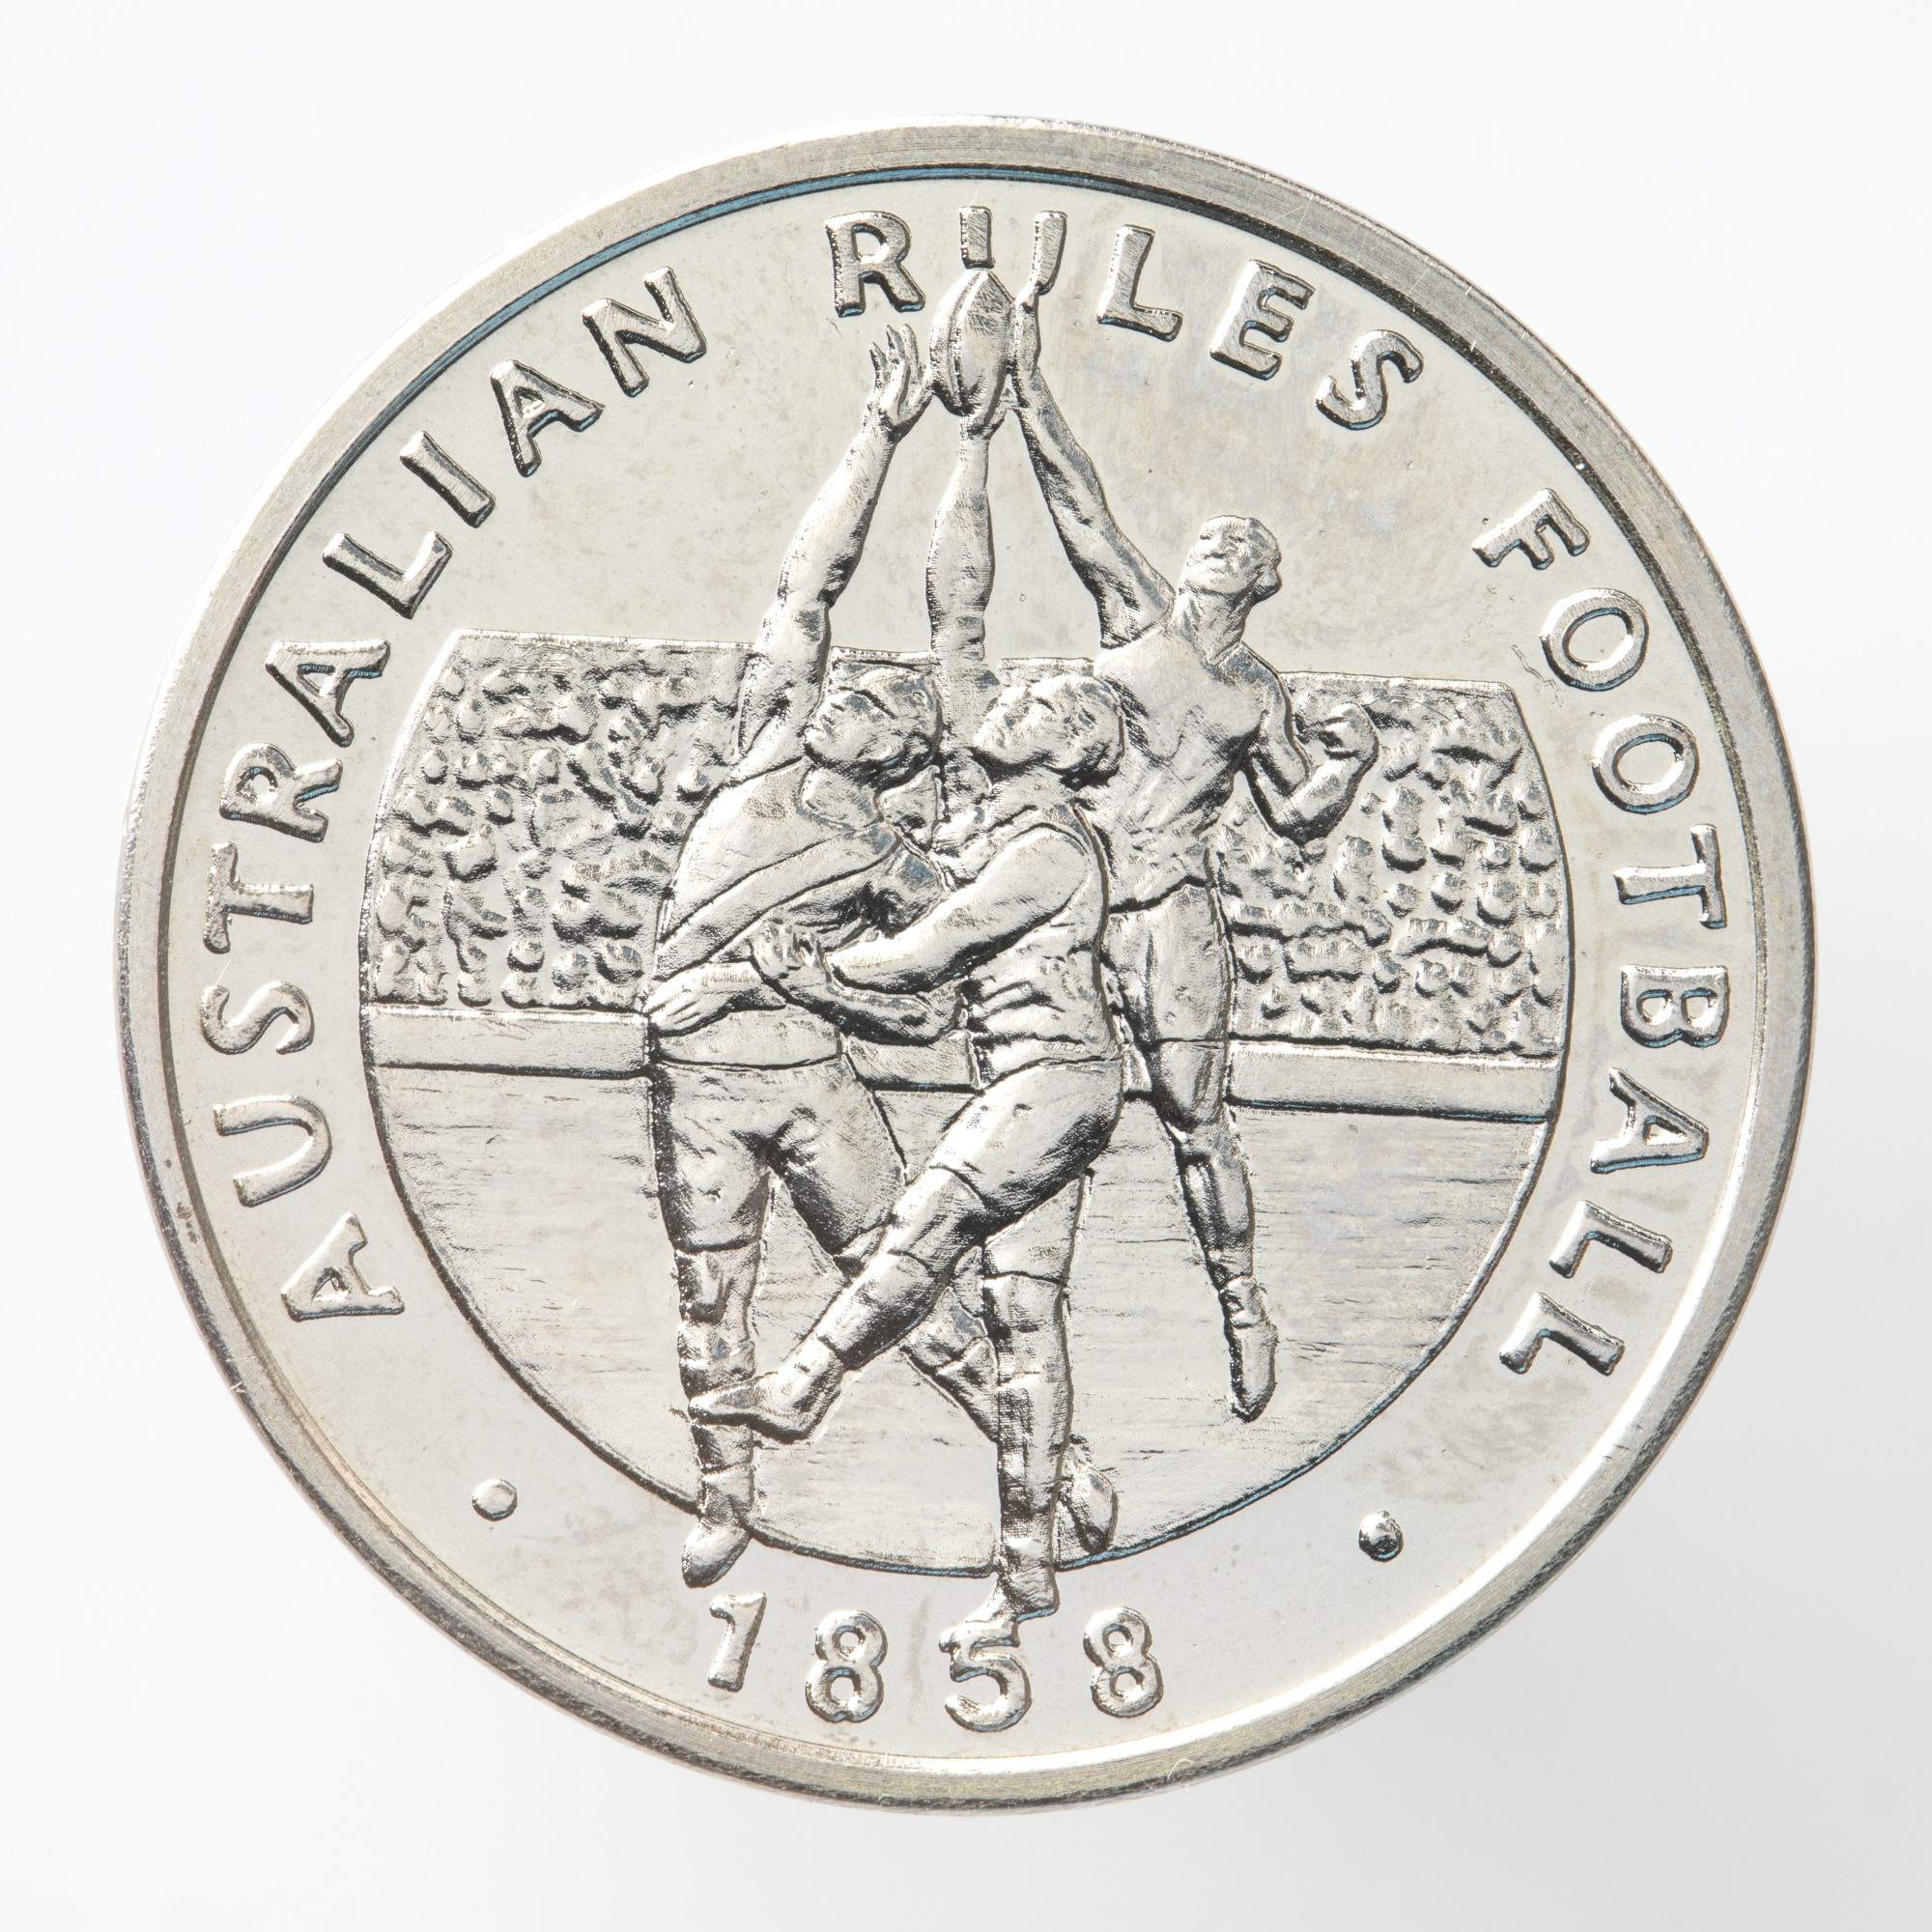 AFL coin